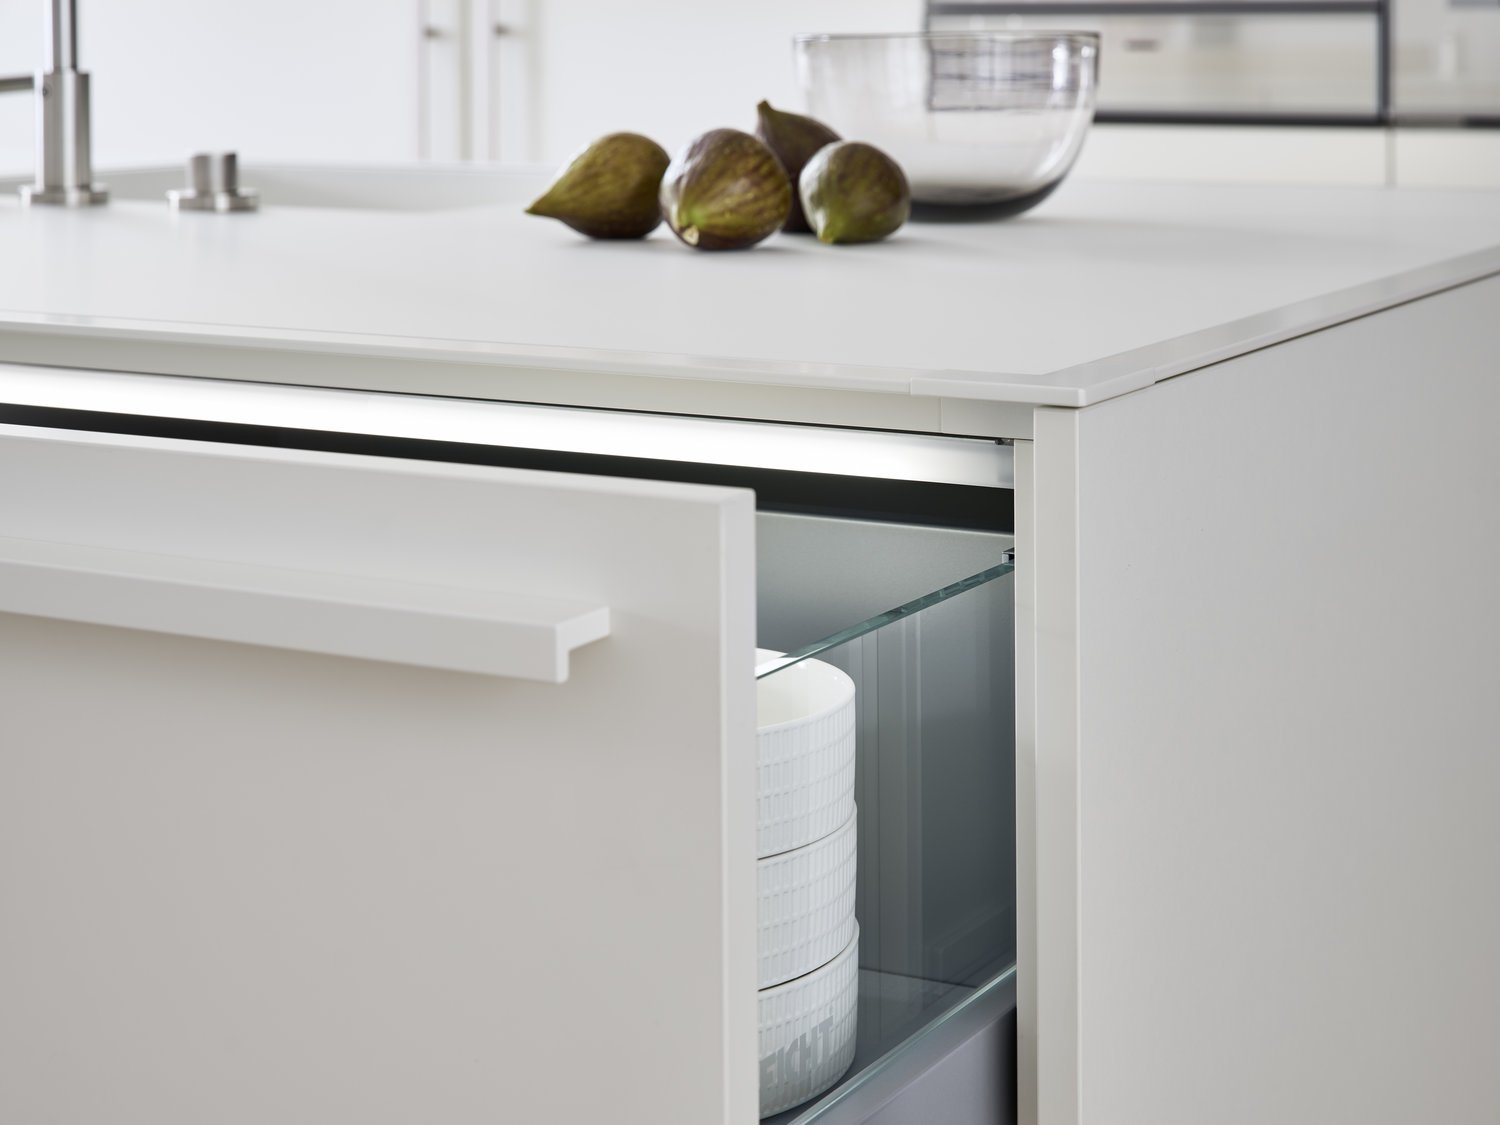 BONDI-E  XYLO connaught kitchens white minimalist kitchen details.jpg